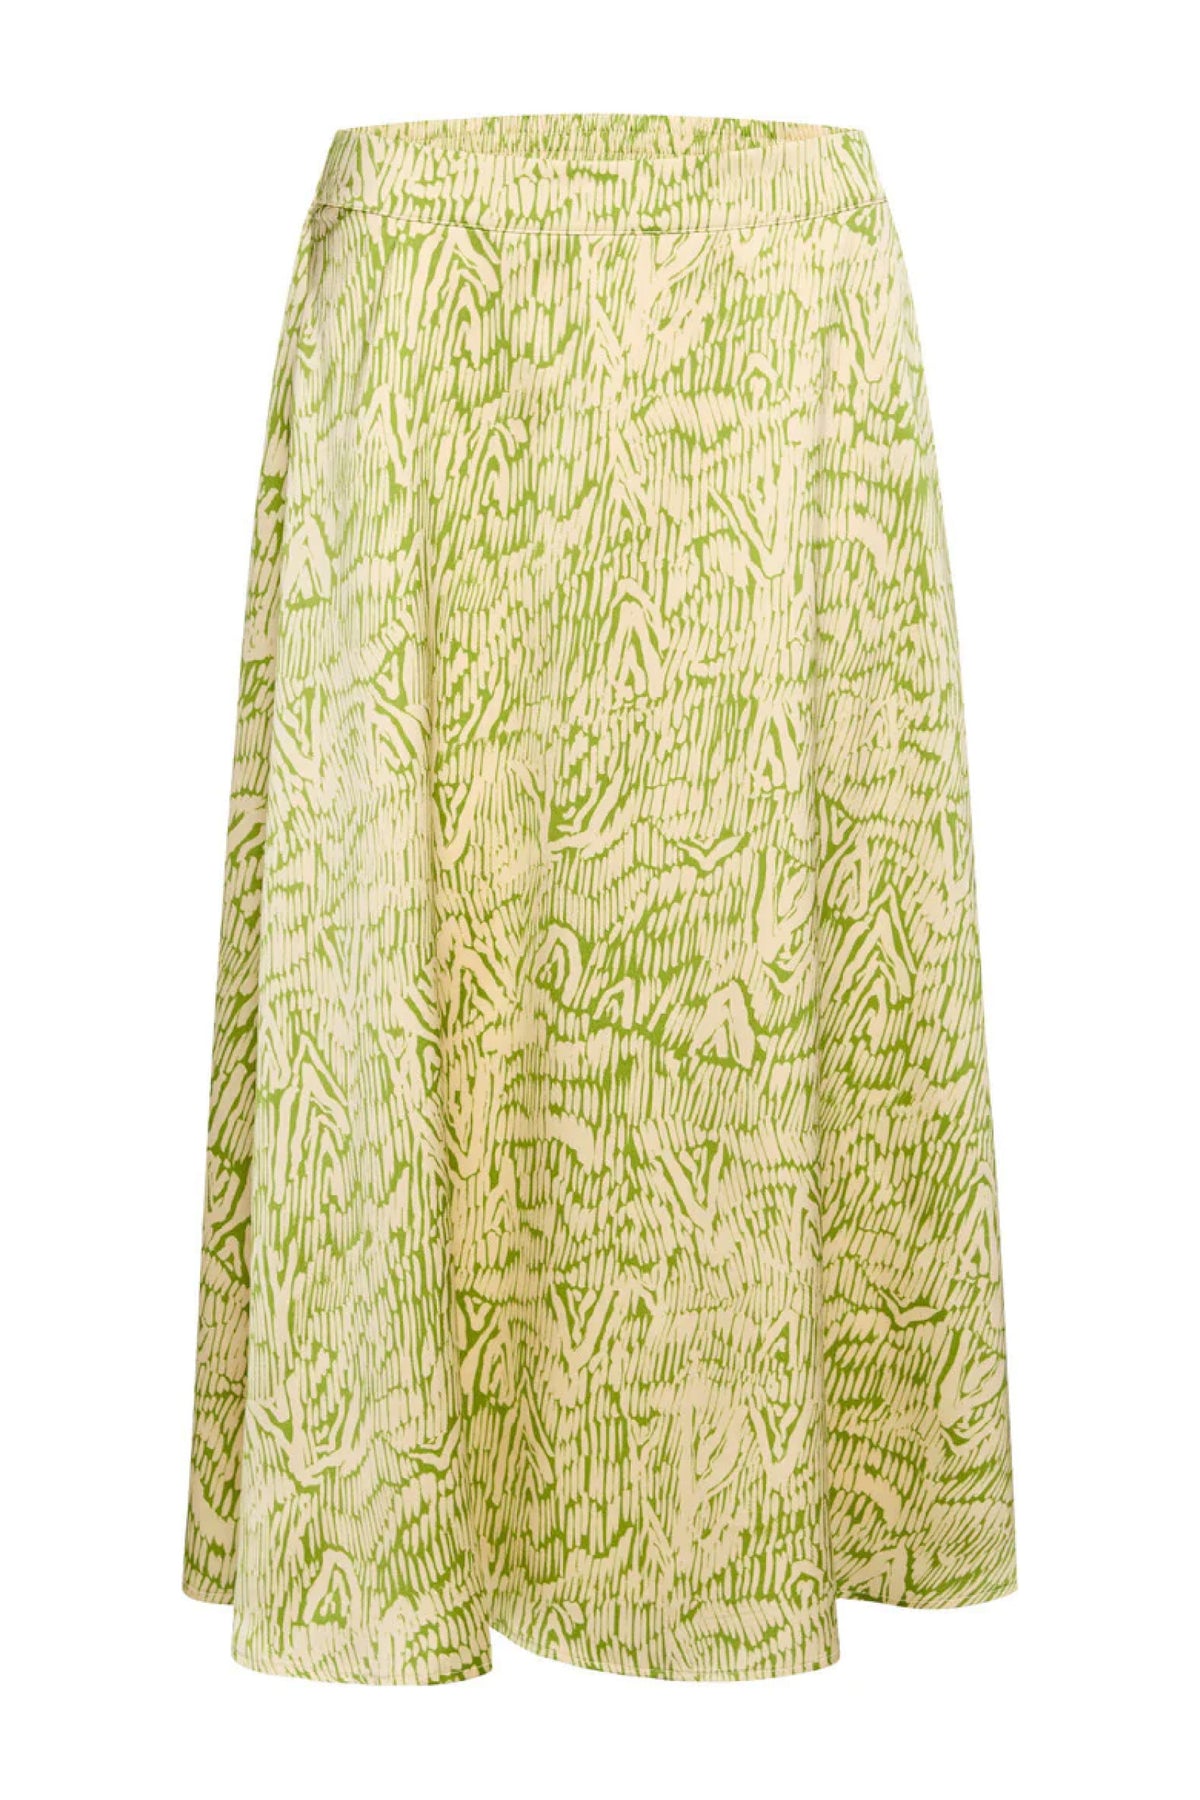 AcaciaBBAmattas skirt - Moss Green print – BRUUNSBAZAAR.COM